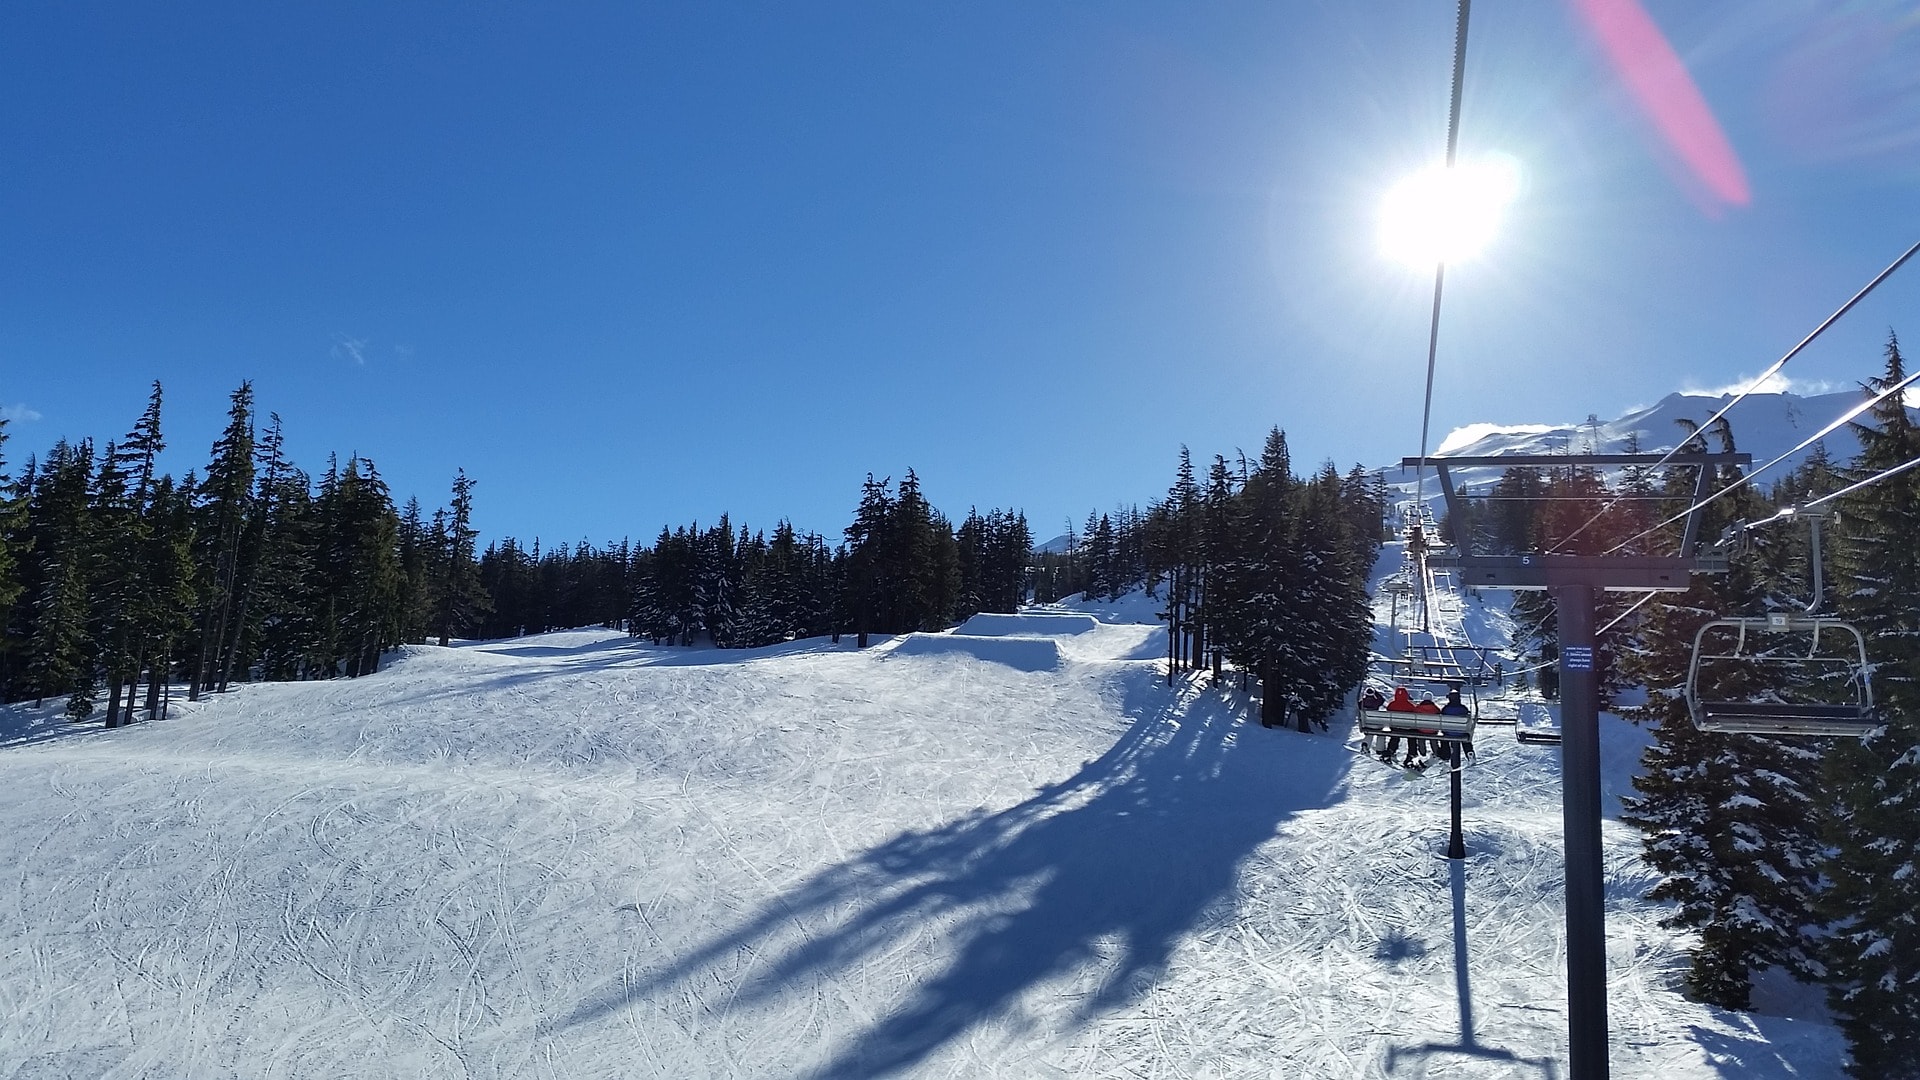 Ski lift at the Mt. Bachelor Ski Area